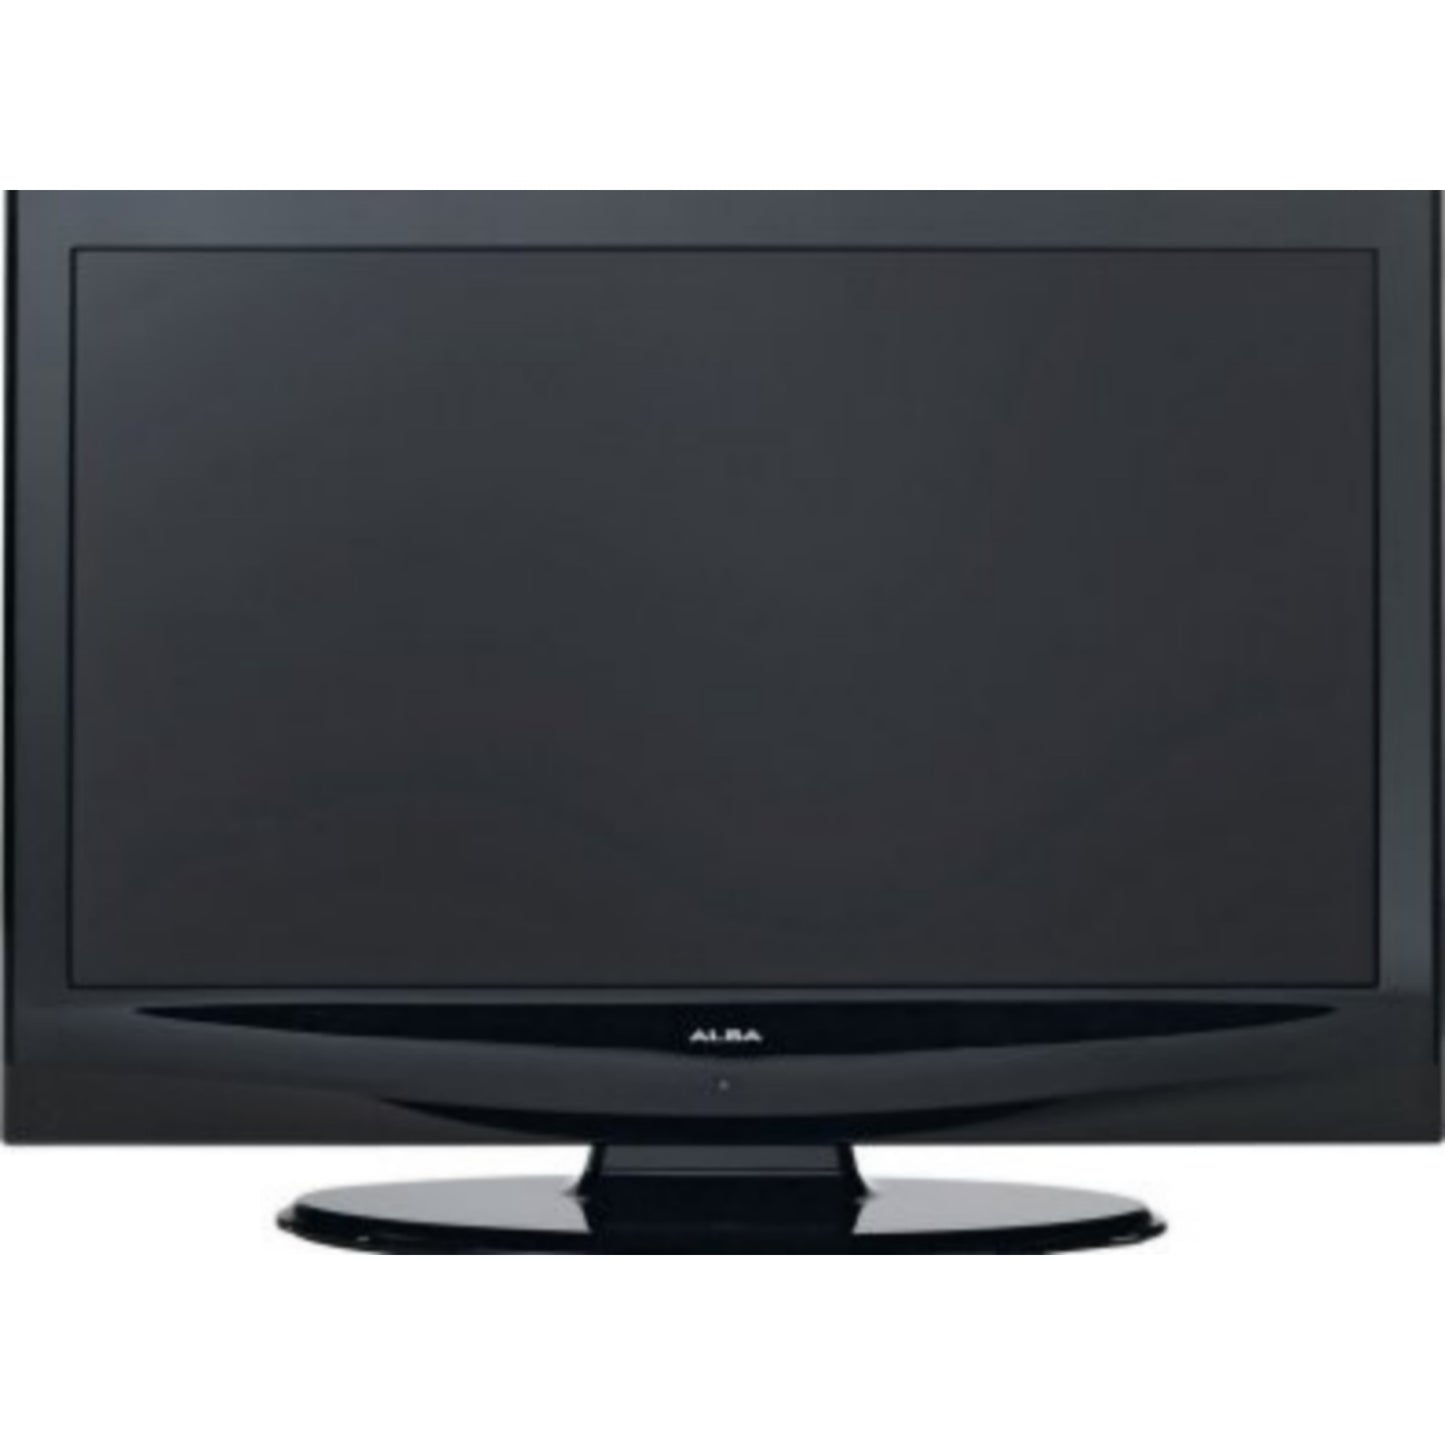 UK Used 32 inch Alba LCD TV